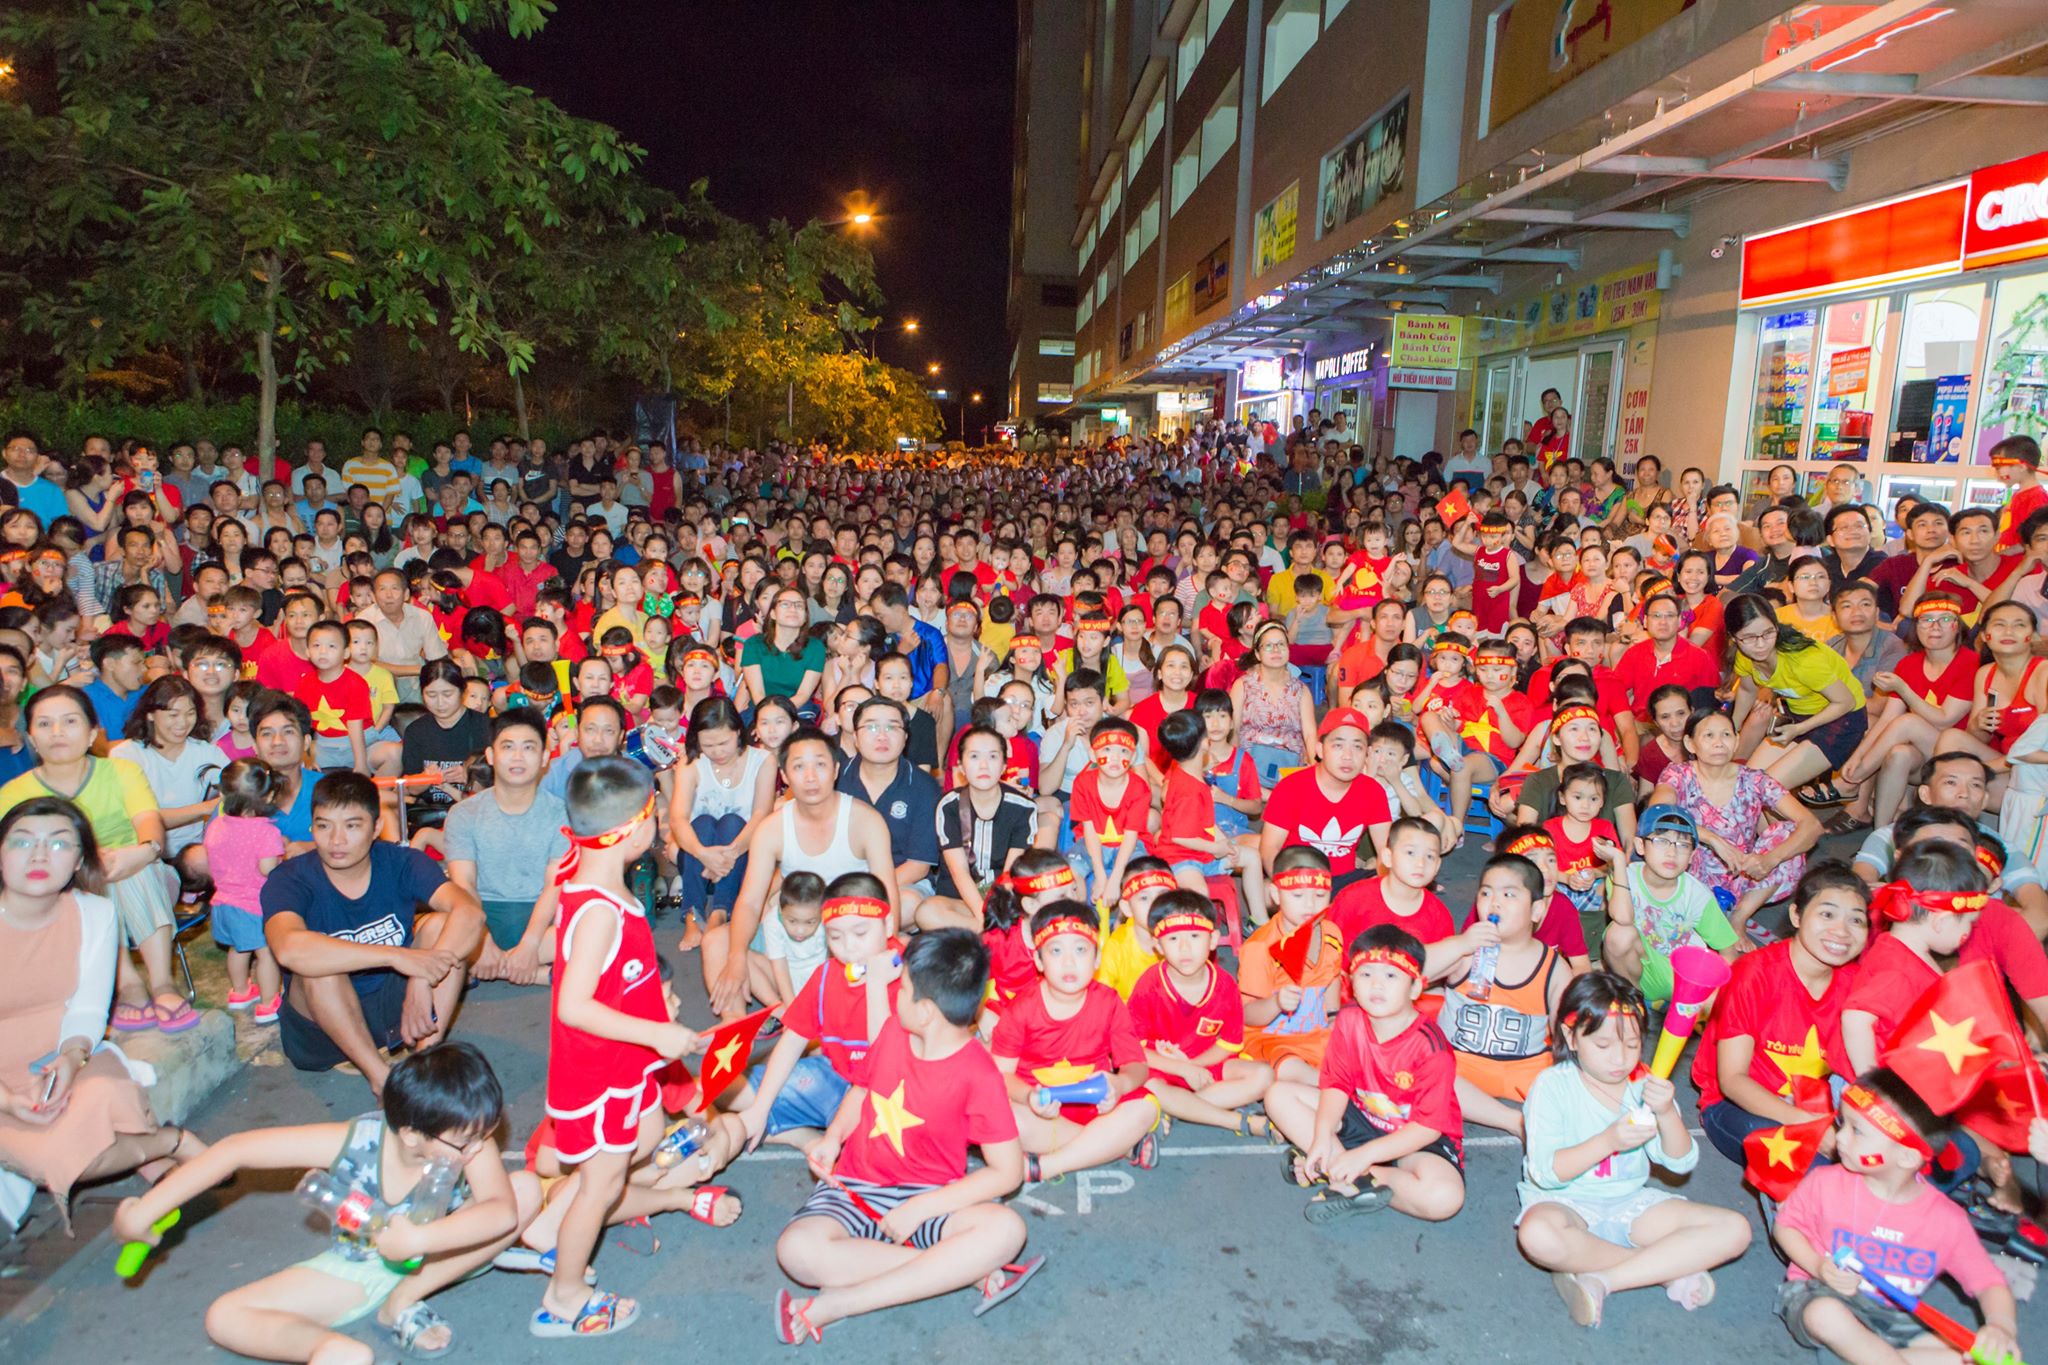  Cư dân chung cư Sunview Town tổ chức xem bóng đá U23 Việt Nam với màn hình lớn